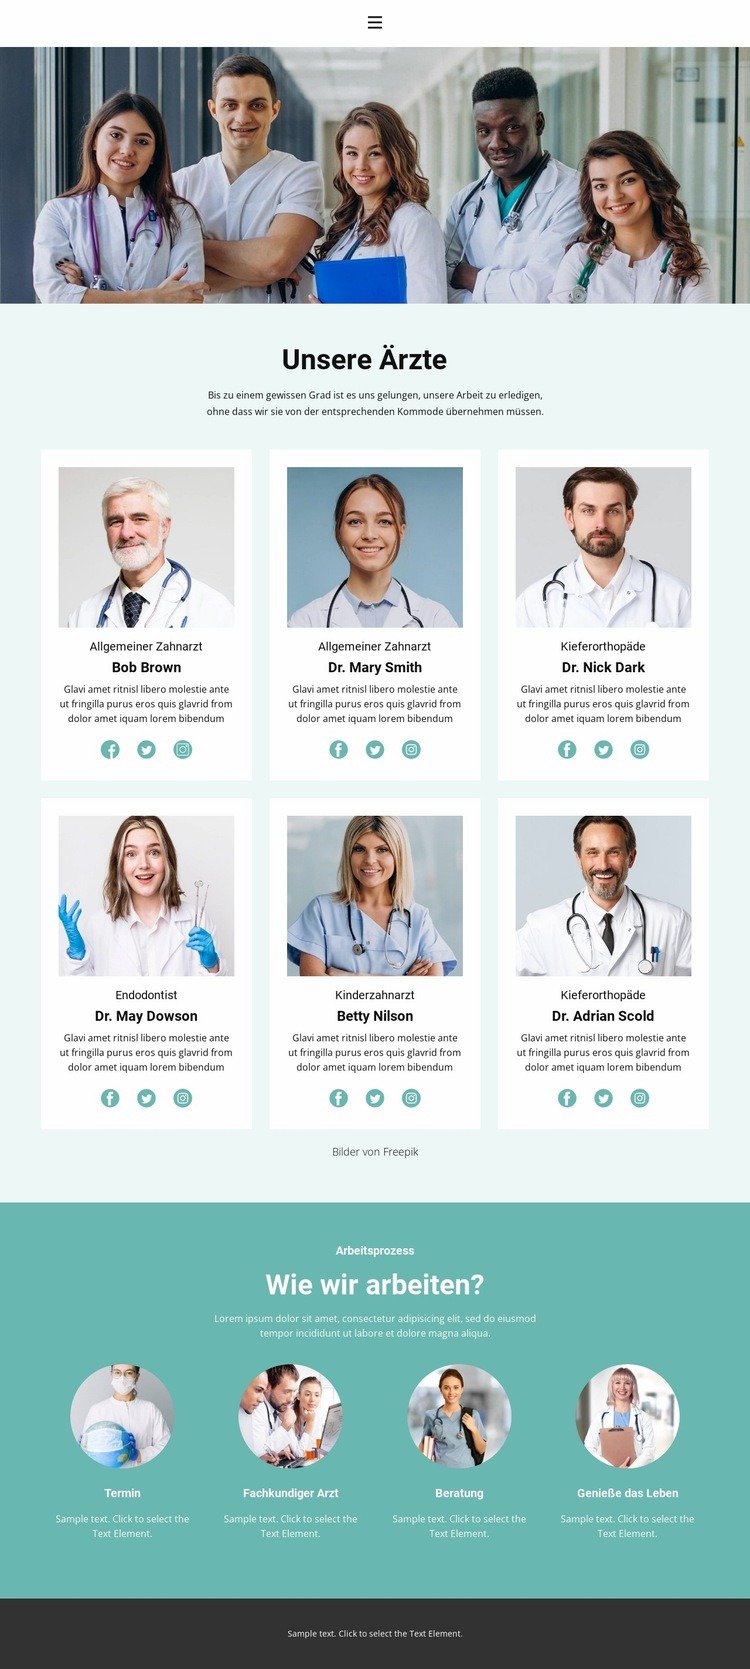 Die besten medizinischen Fachkräfte Website design